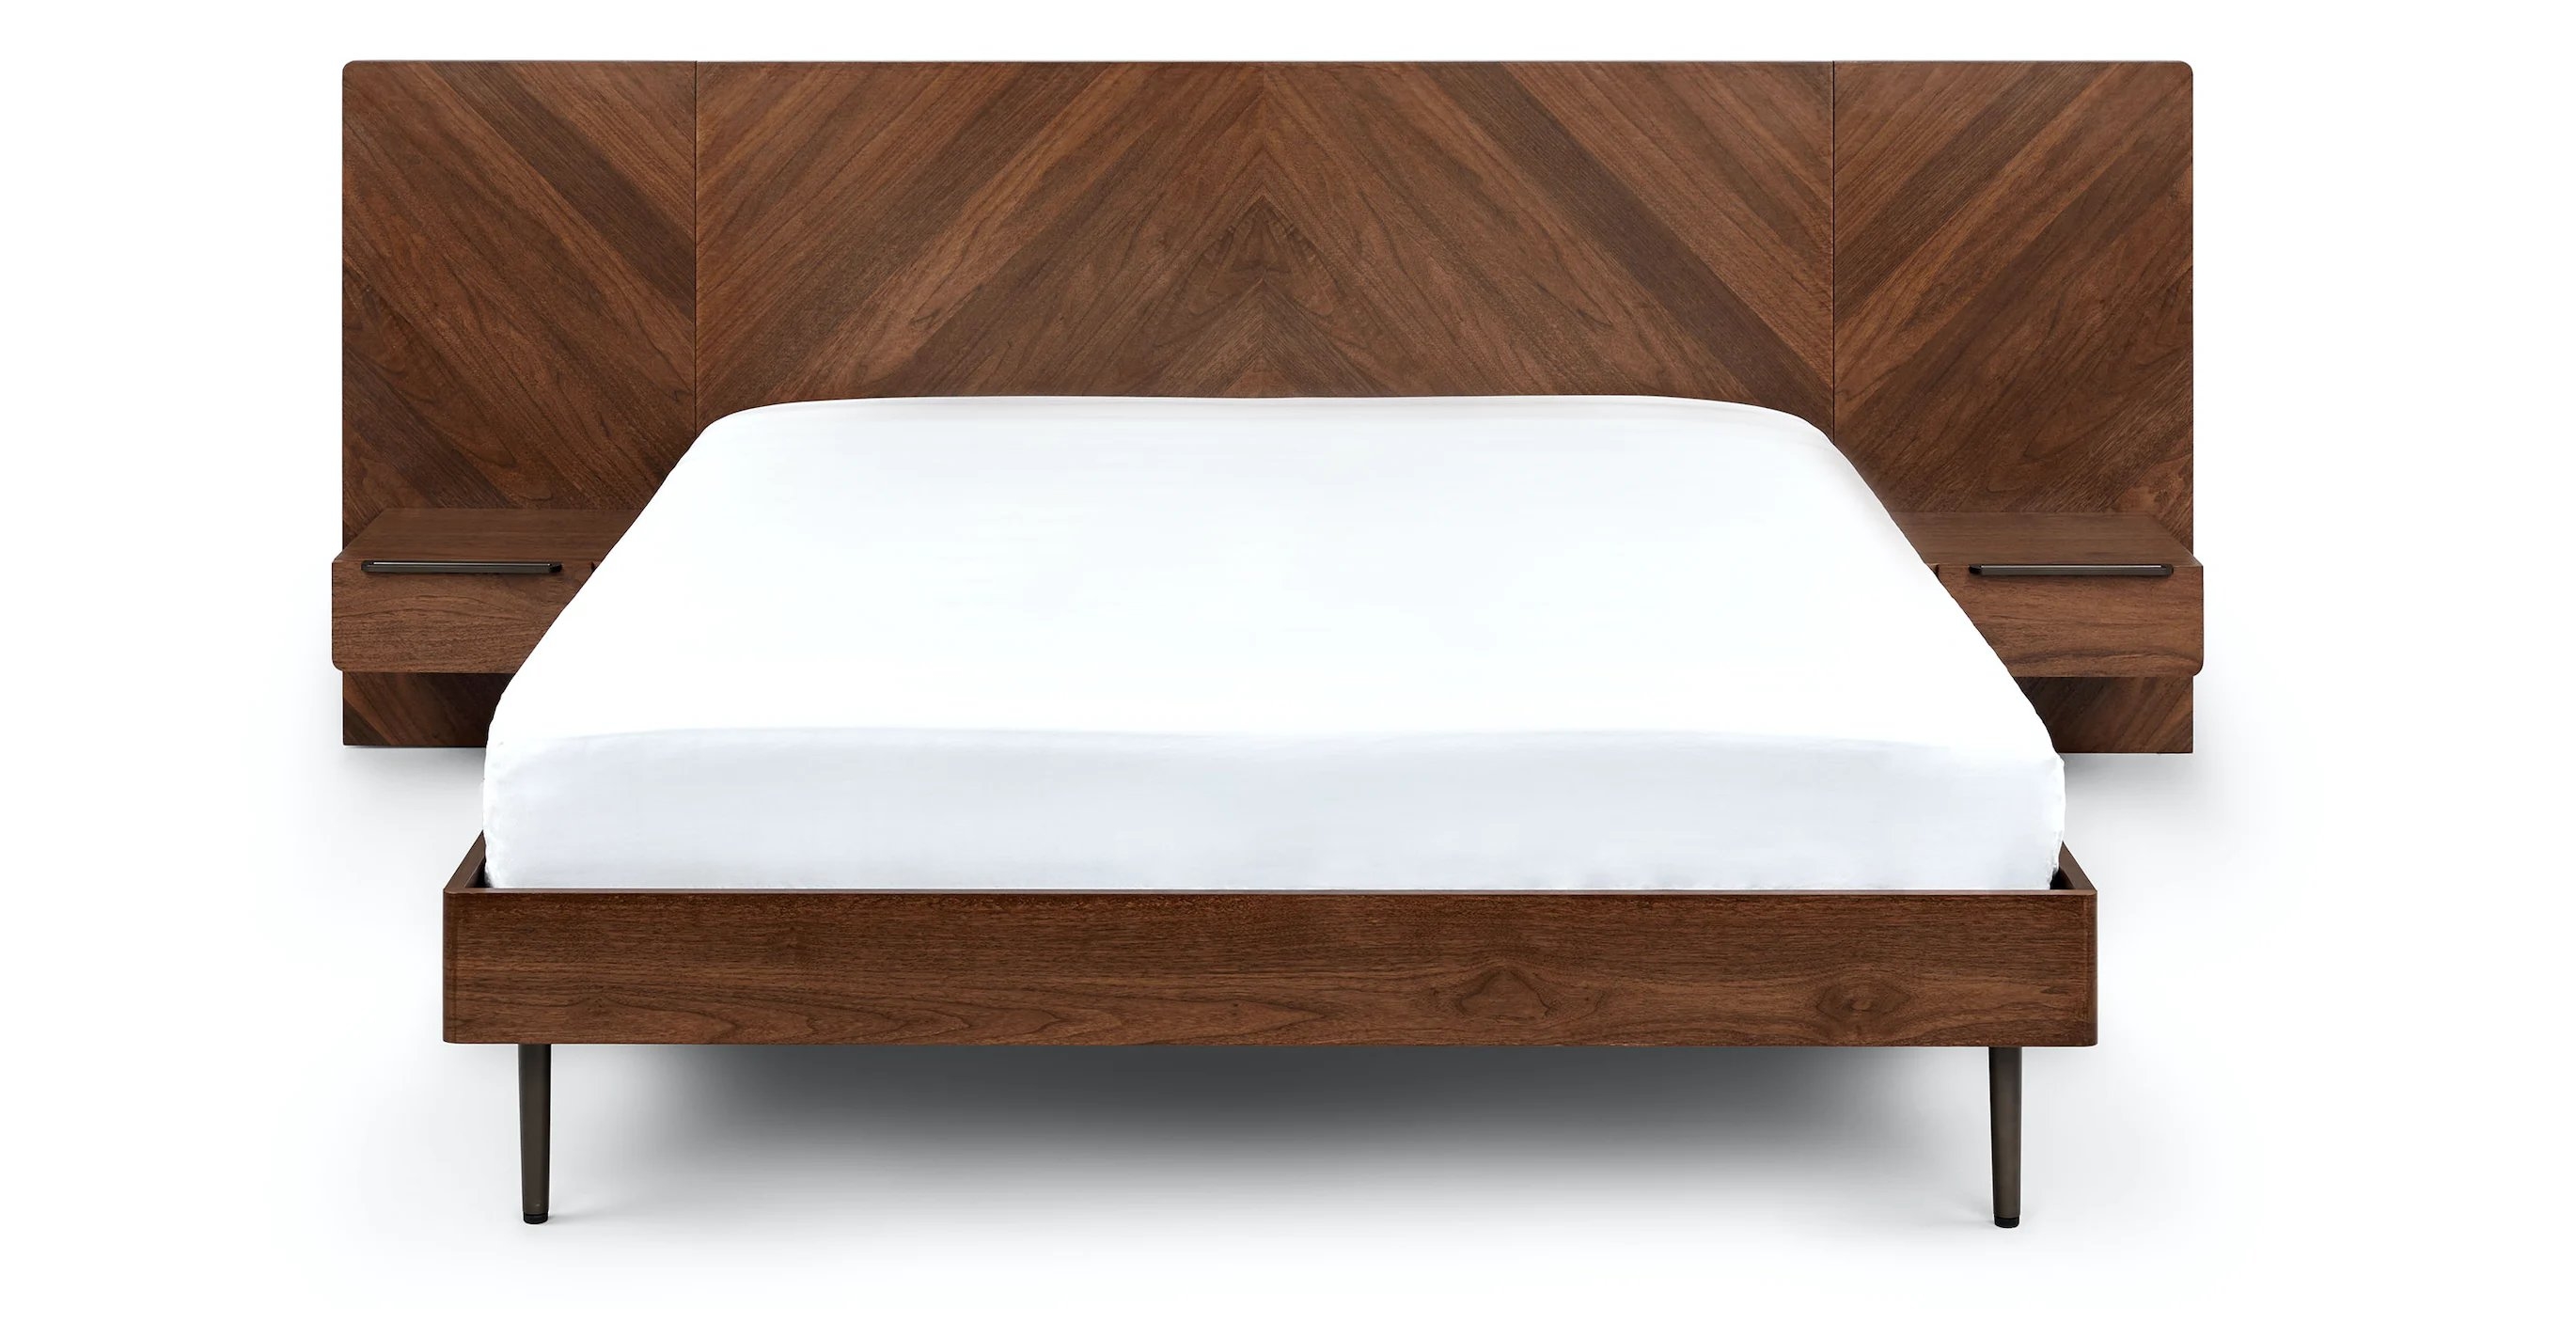 Nera Walnut Queen Bed with Nightstands - Image 2